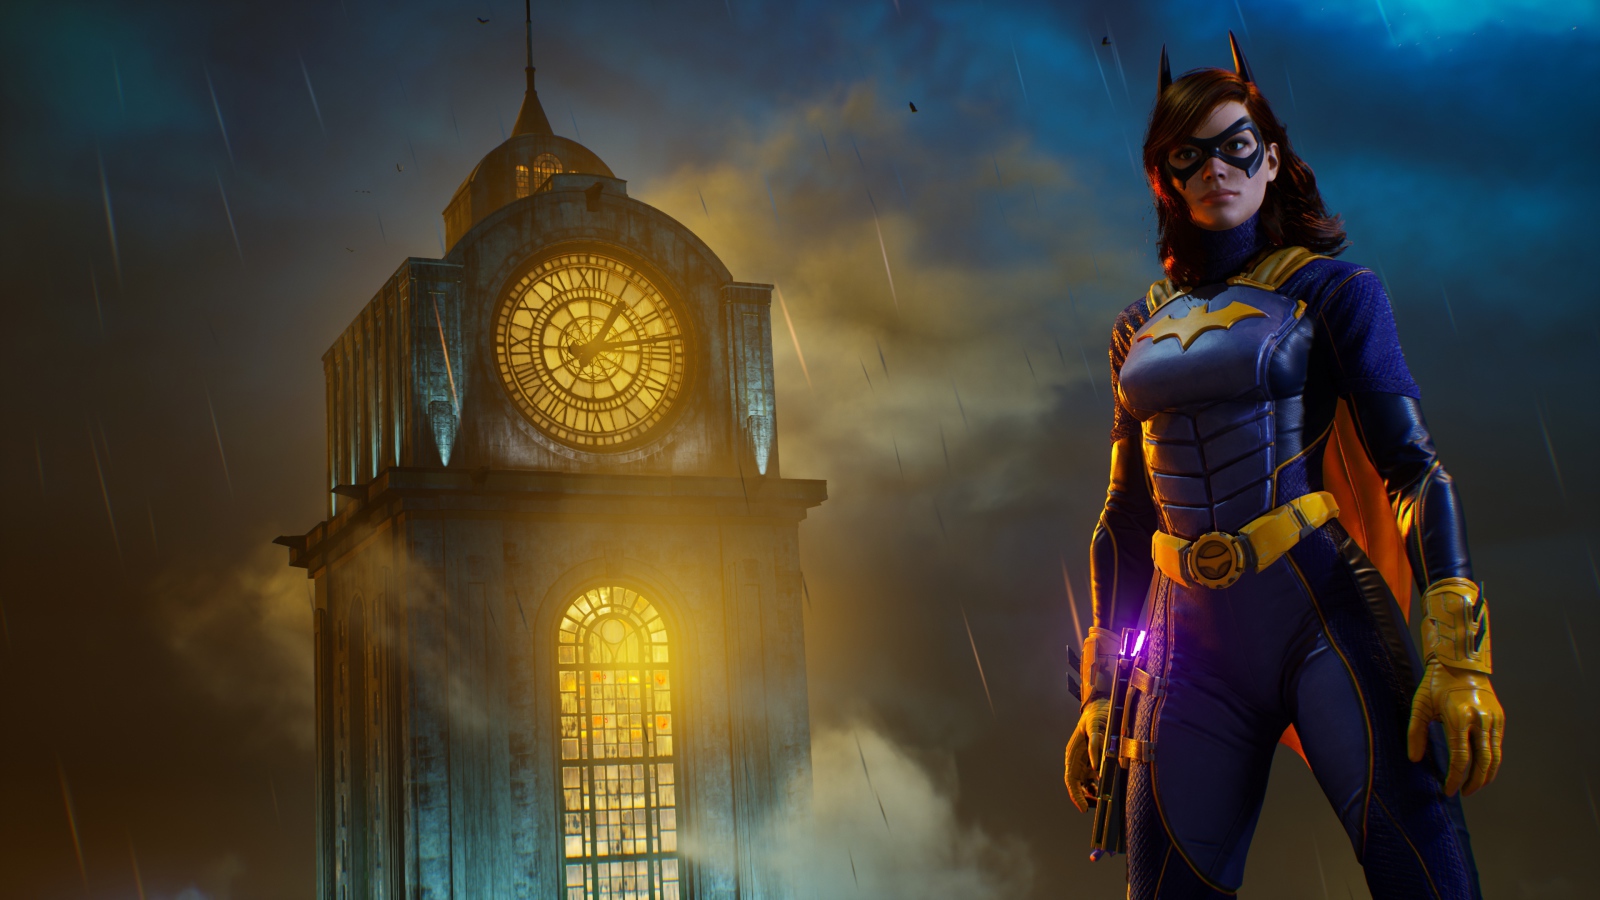 Бэтгерл персонаж компьютерной игры Gotham Knights, 2021